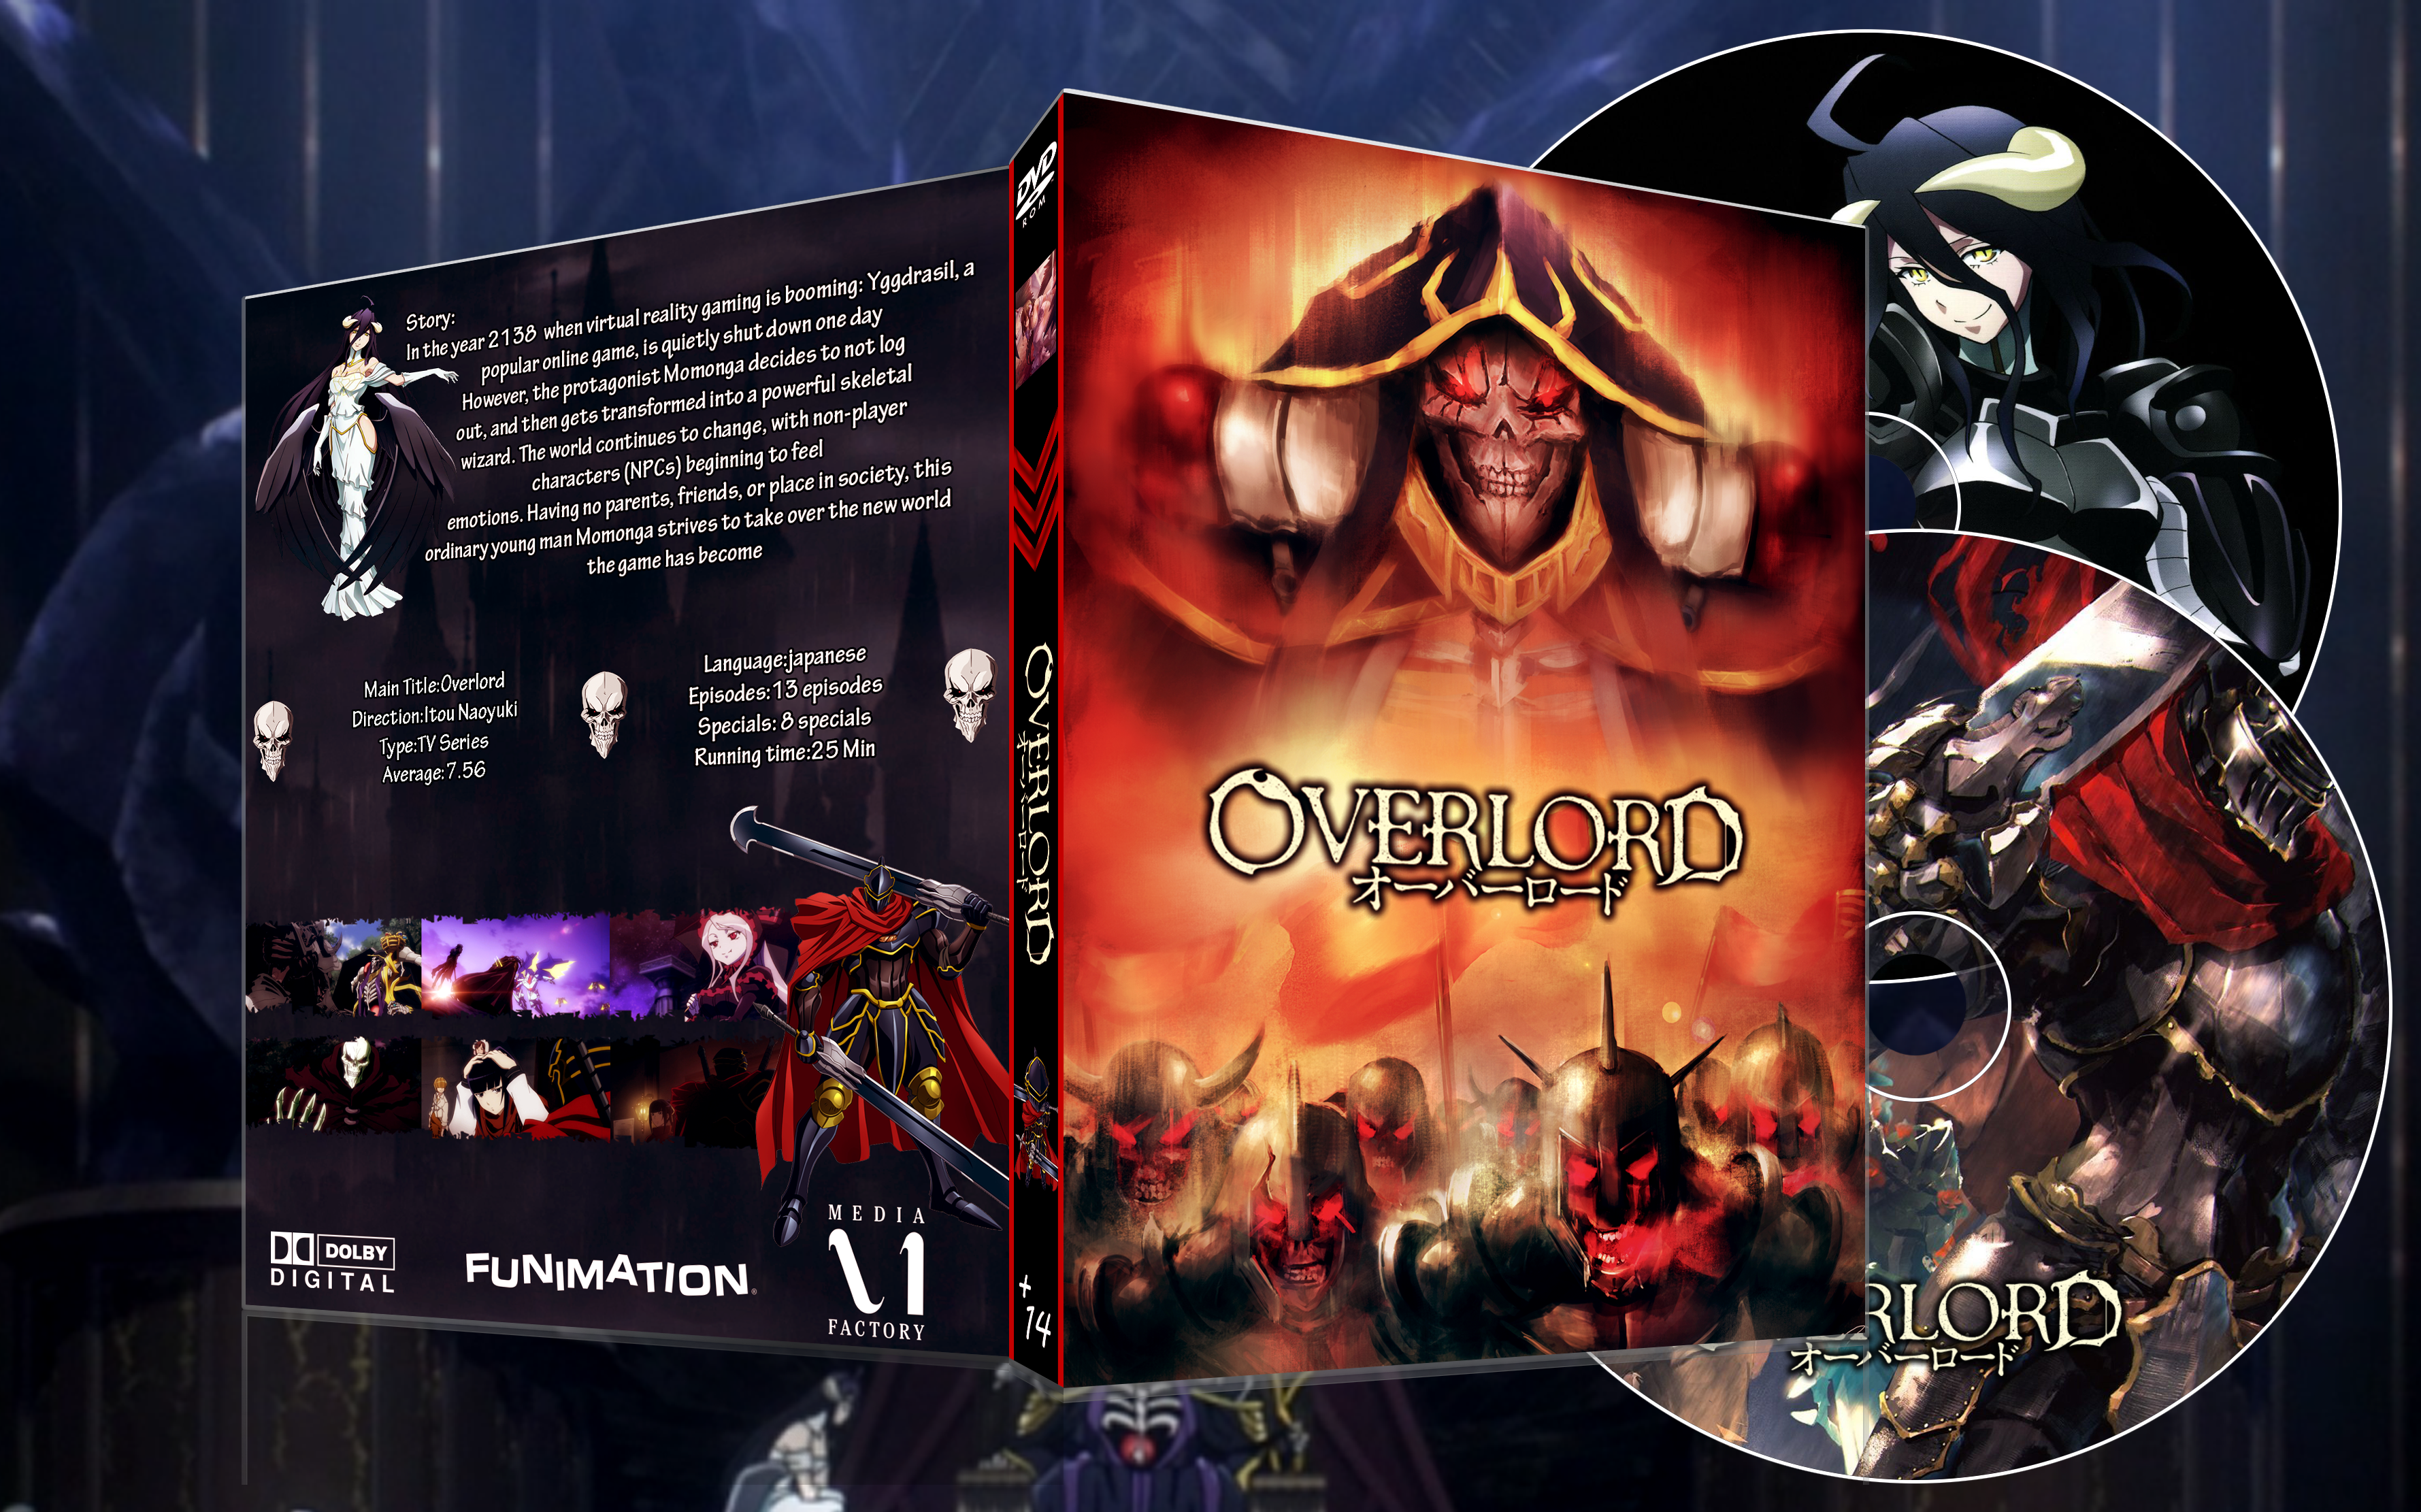 Overlord Temporada 2 - DVD - Naoyuki Itou